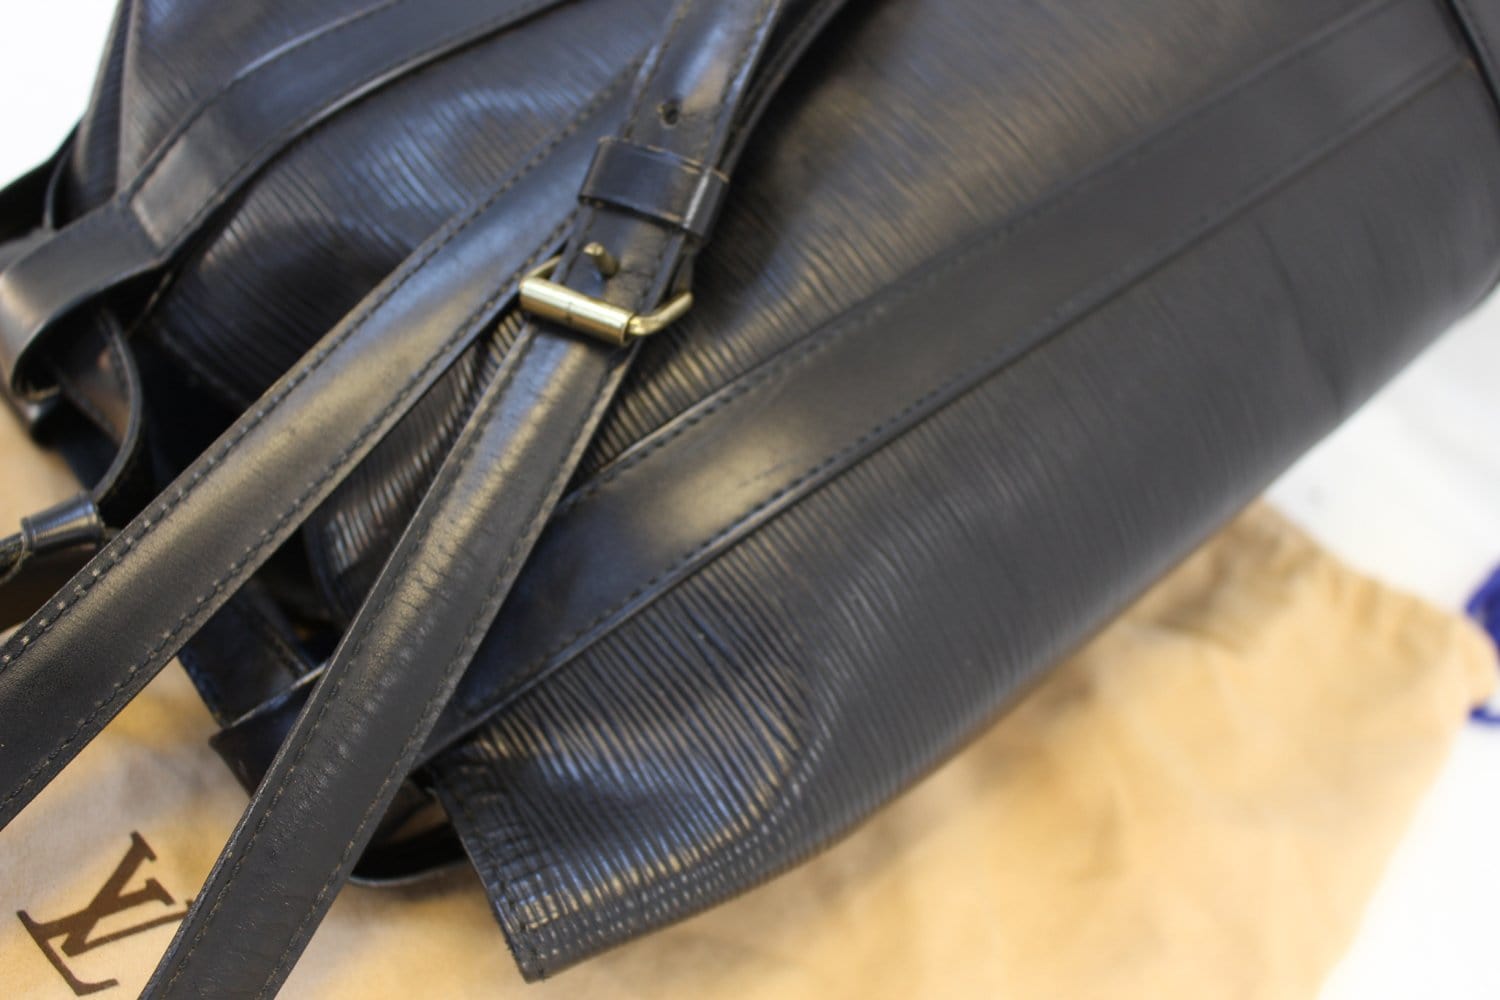 Louis Vuitton Randonnee Blue Epi Leather Shoulder Bag 2799